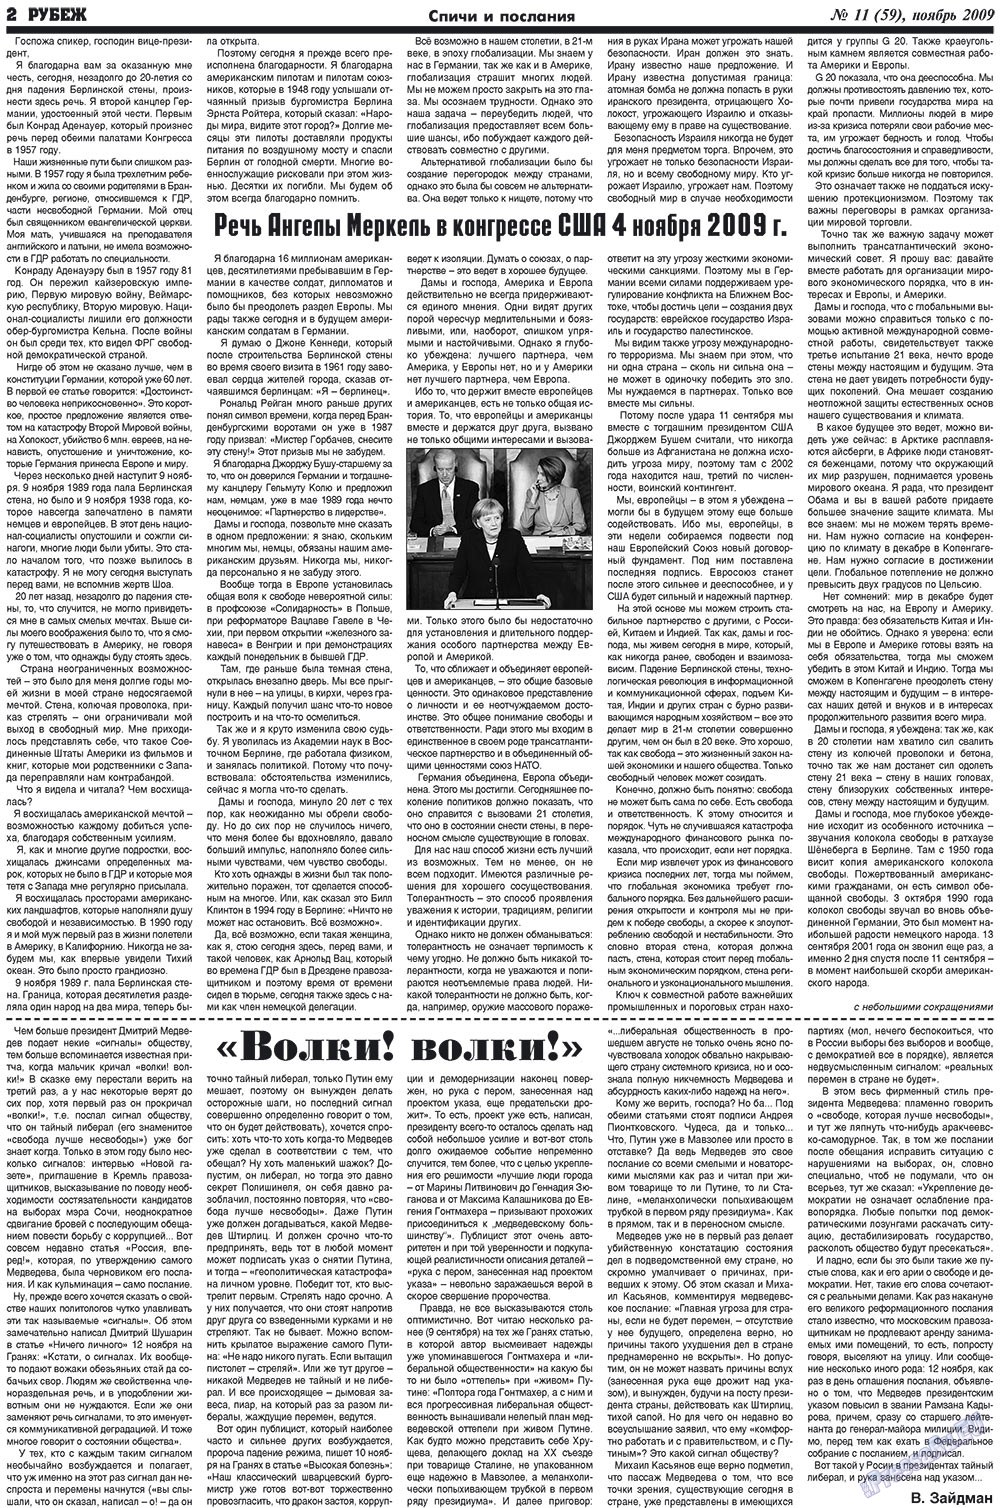 Рубеж (газета). 2009 год, номер 11, стр. 2